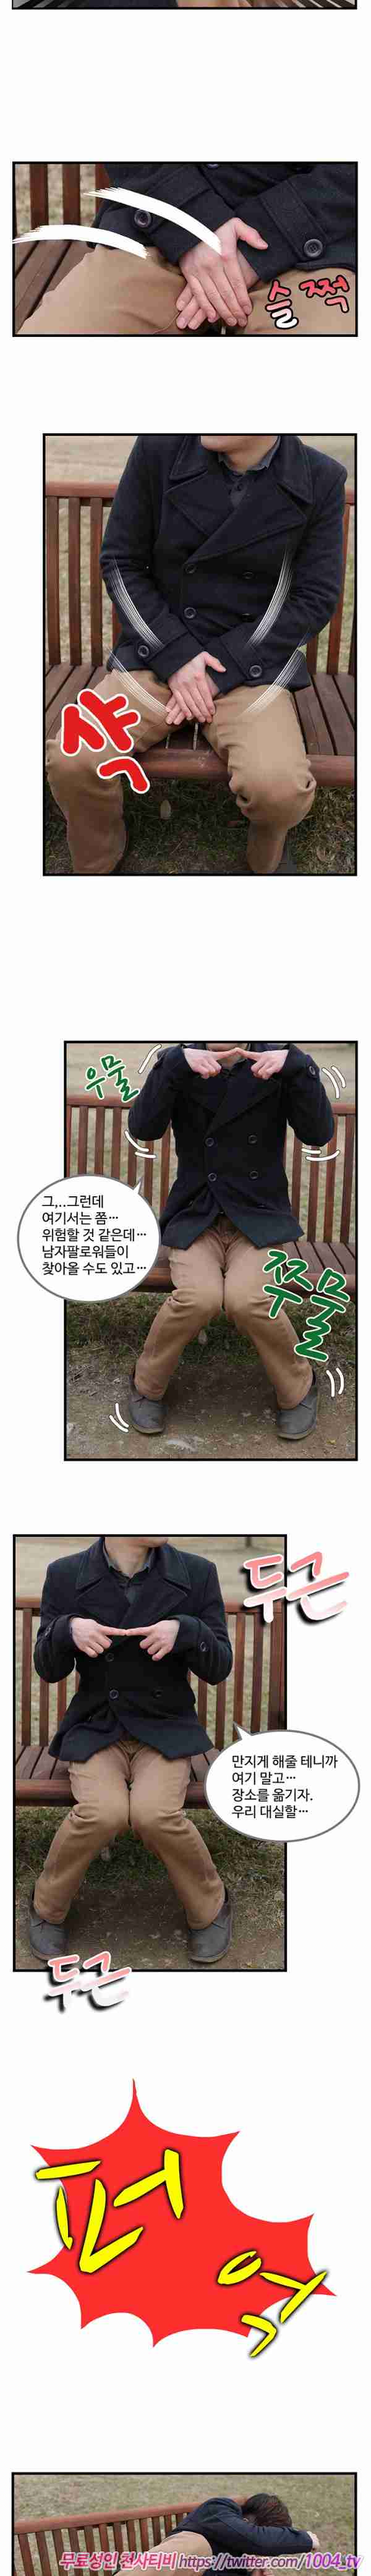 [韩国漫画]ID0026 韩国真人漫画27.rar--性感提示：宽衣解带甜美猫女双手遮乳肉感十足